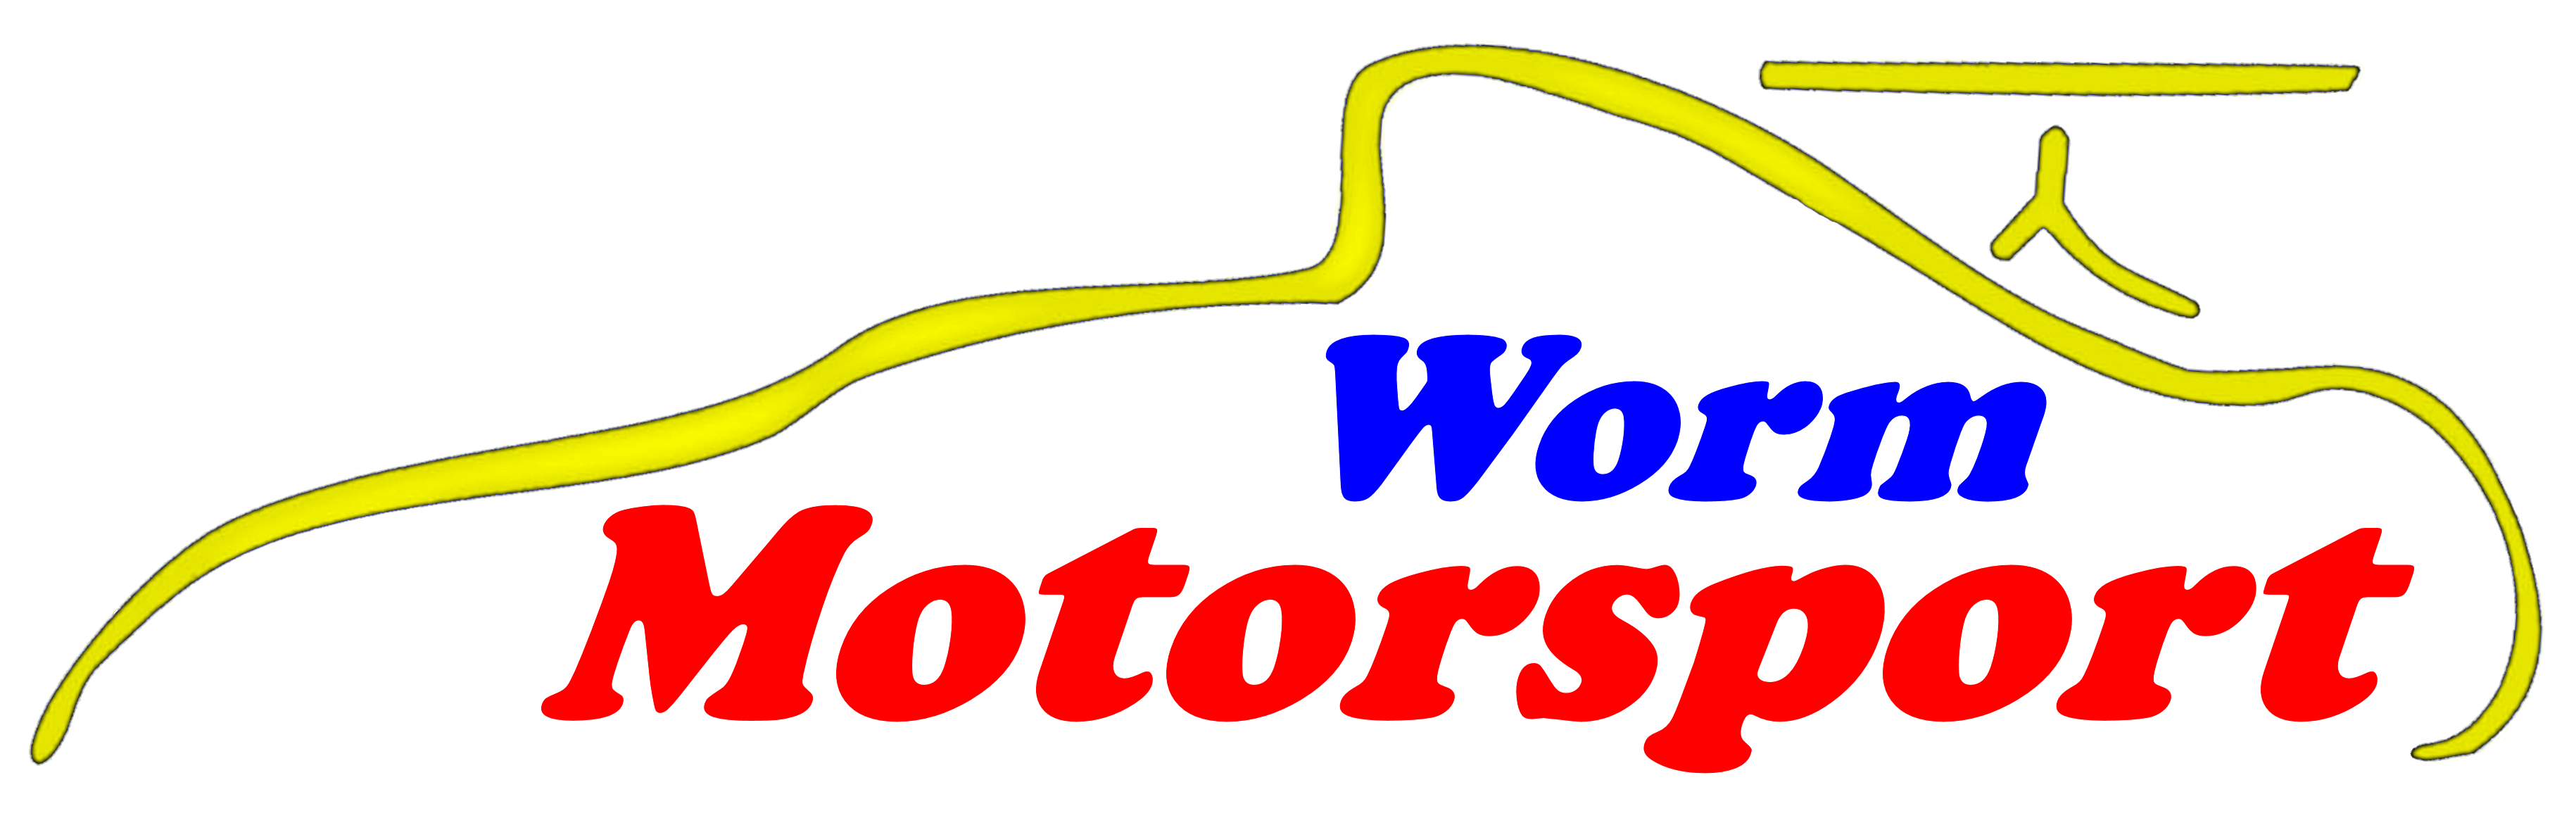 (c) Worm-motorsport.de